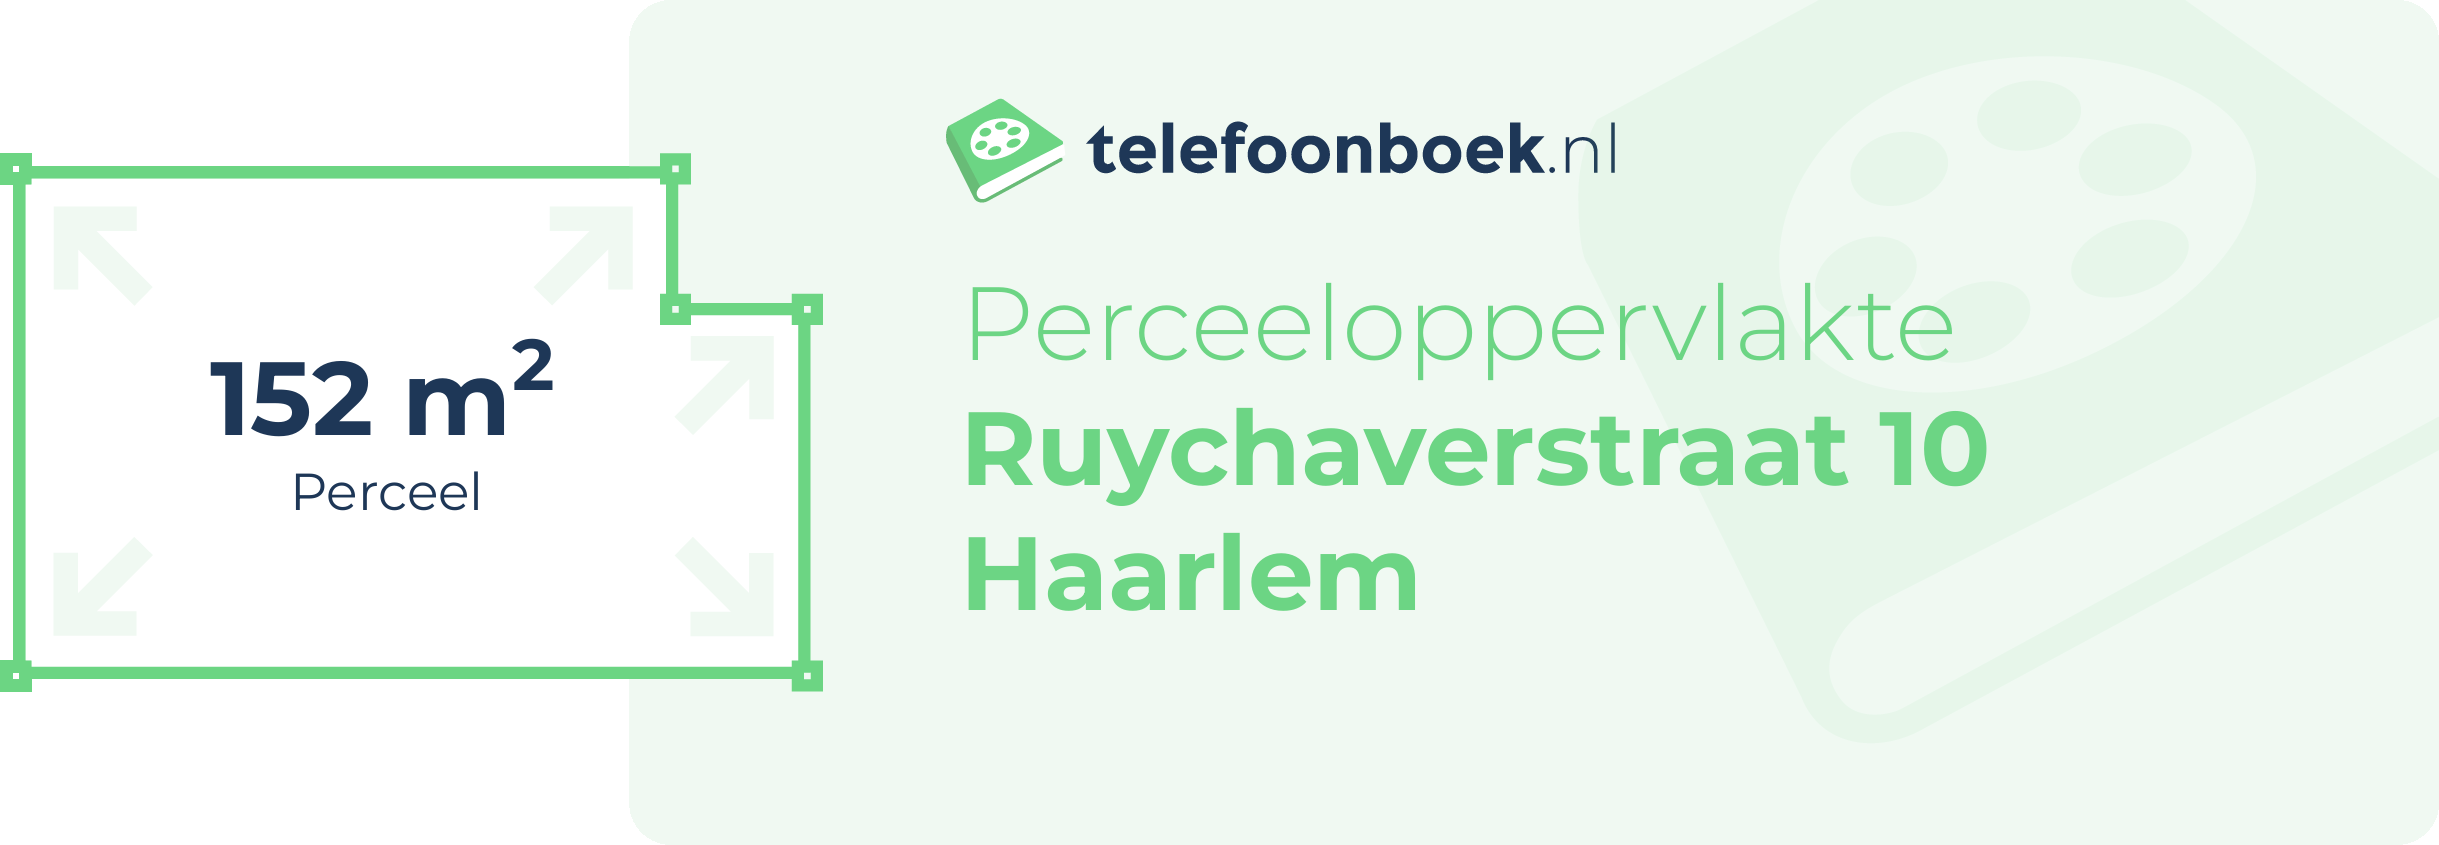 Perceeloppervlakte Ruychaverstraat 10 Haarlem